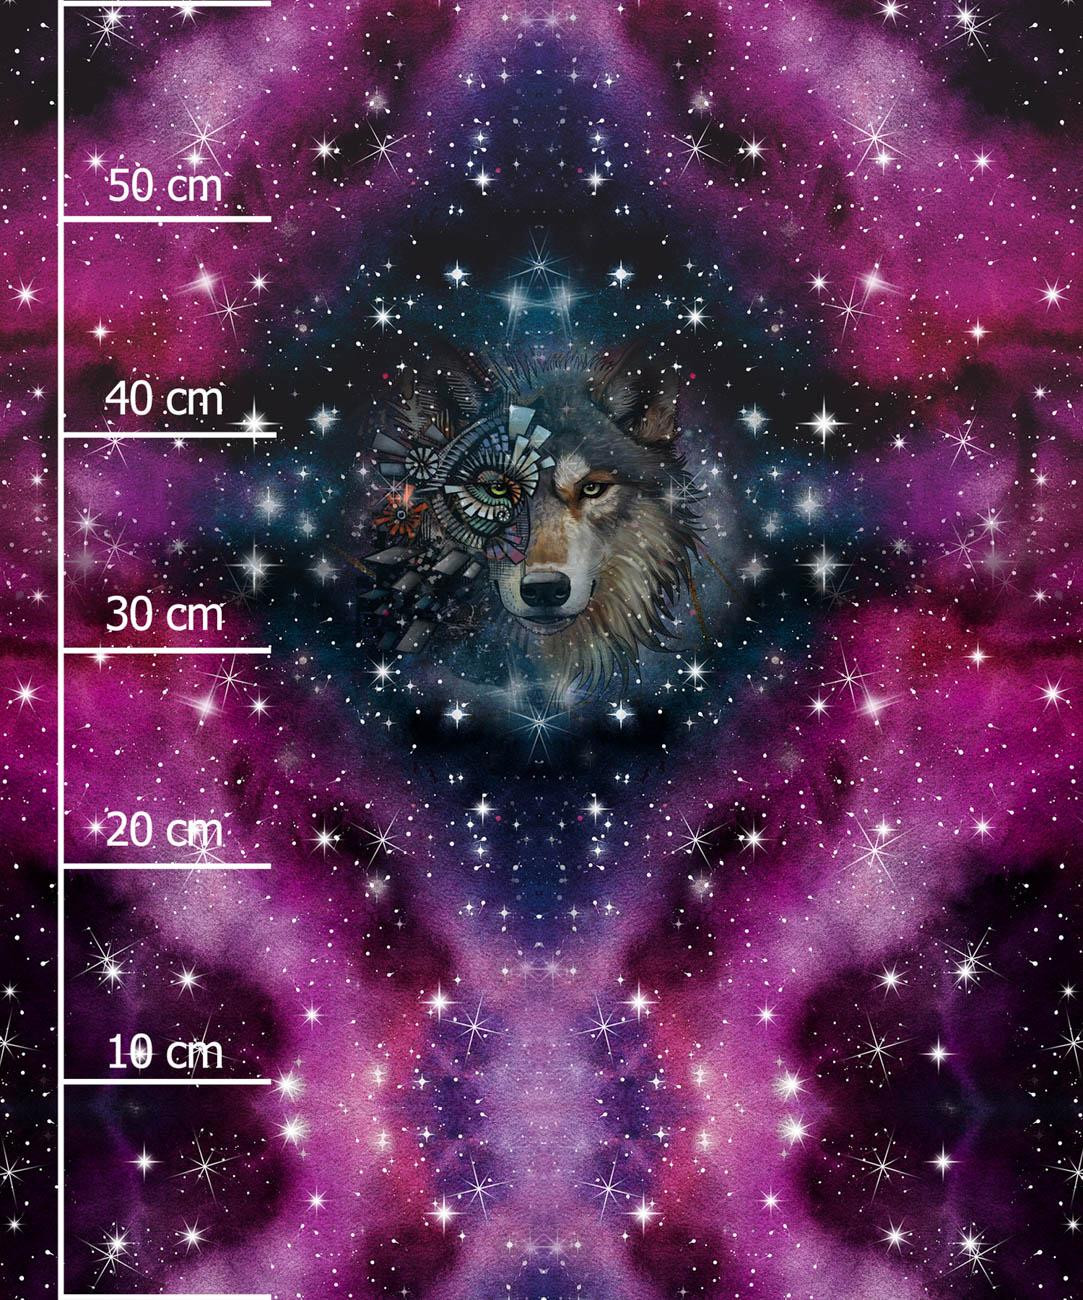 Vlk / Akvarelová galaxie Vz. 8 - panel (60cm x 50cm) lehký, česaný úplet